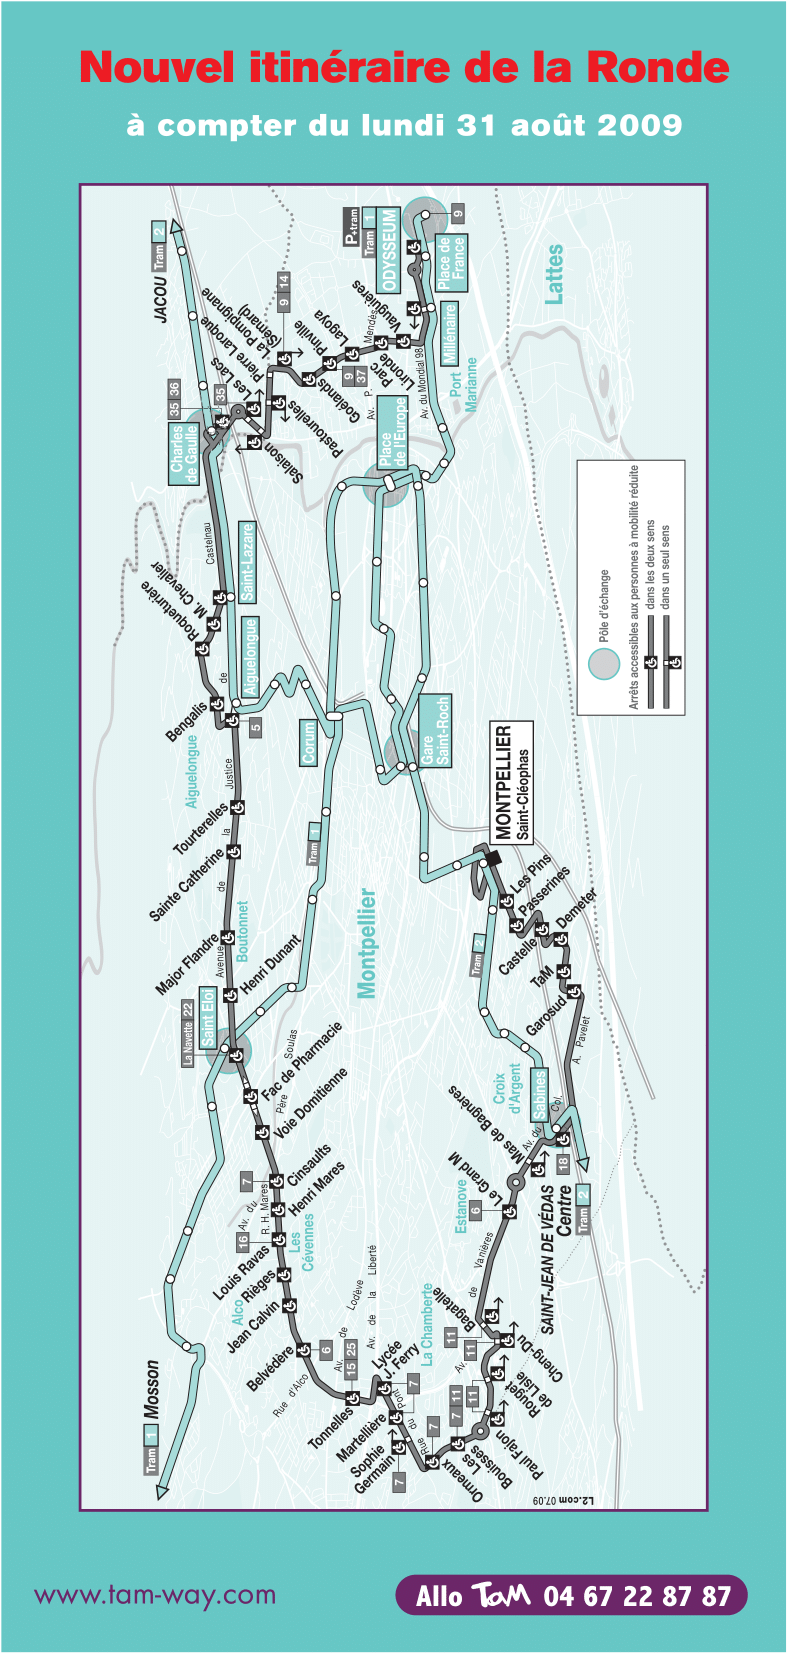 Plan ligne La Ronde à partir de septembre 2009. Source : document TaM